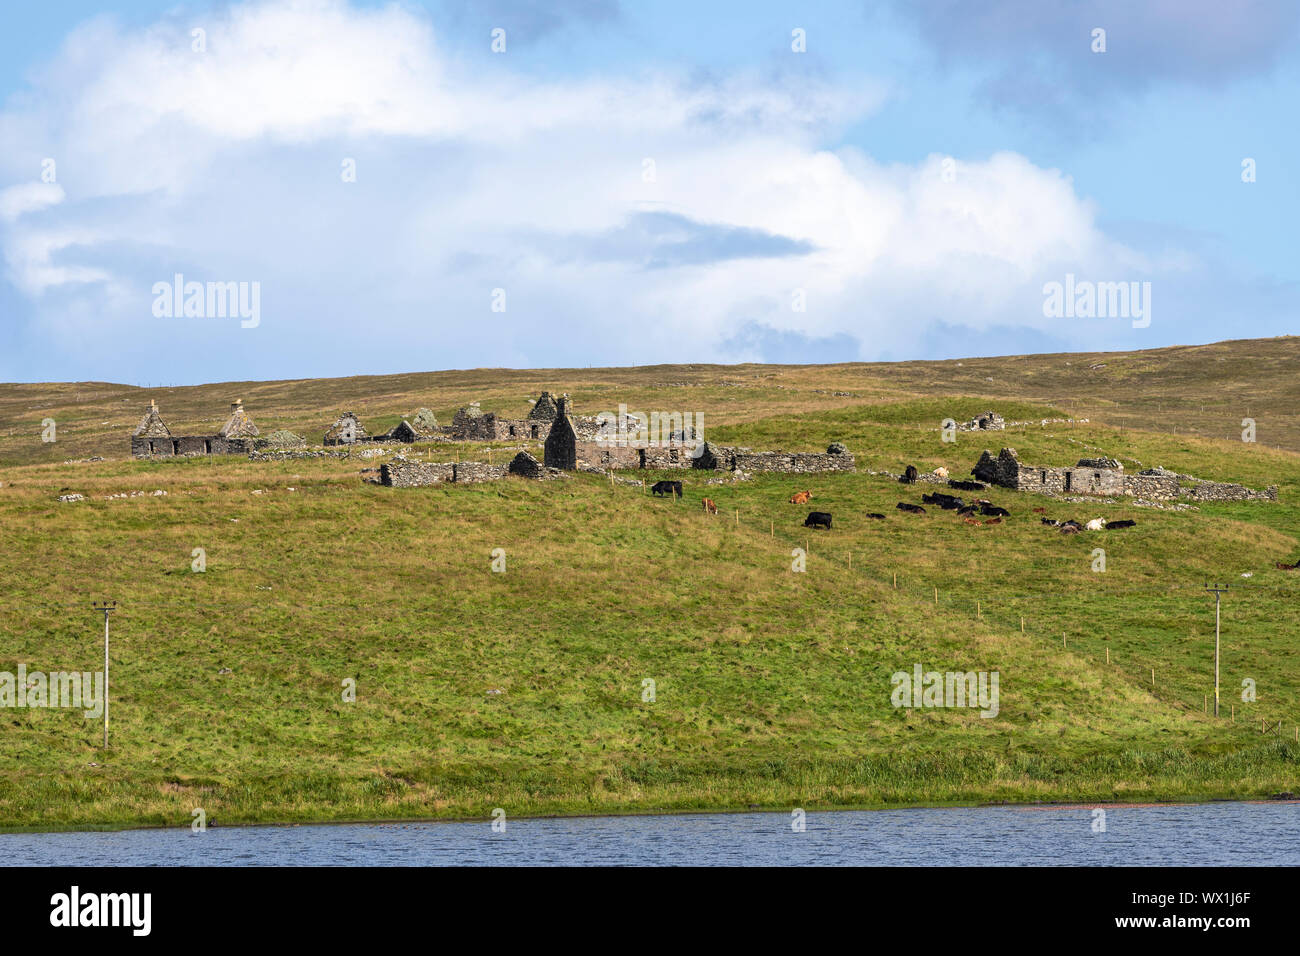 Bestiame bovino vicino rovinato lapidato cottages e loch di snarravoe, Unst, isole Shetland, Scotland, Regno Unito Foto Stock